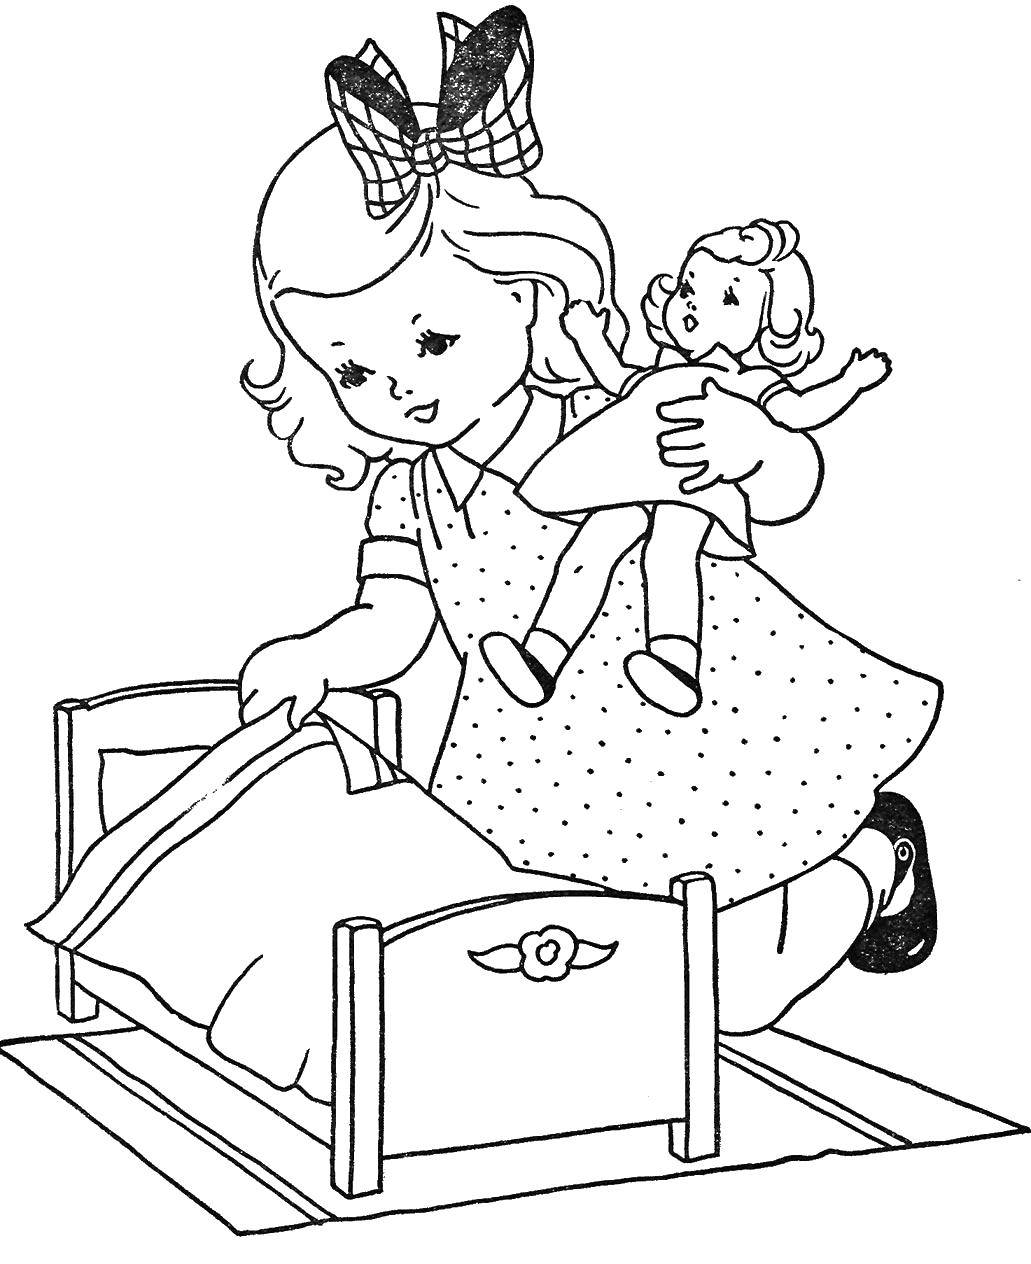 Название: Раскраска Девочка укладывает куклу спать. Категория: одежда и кукла. Теги: Игрушка, кукла.